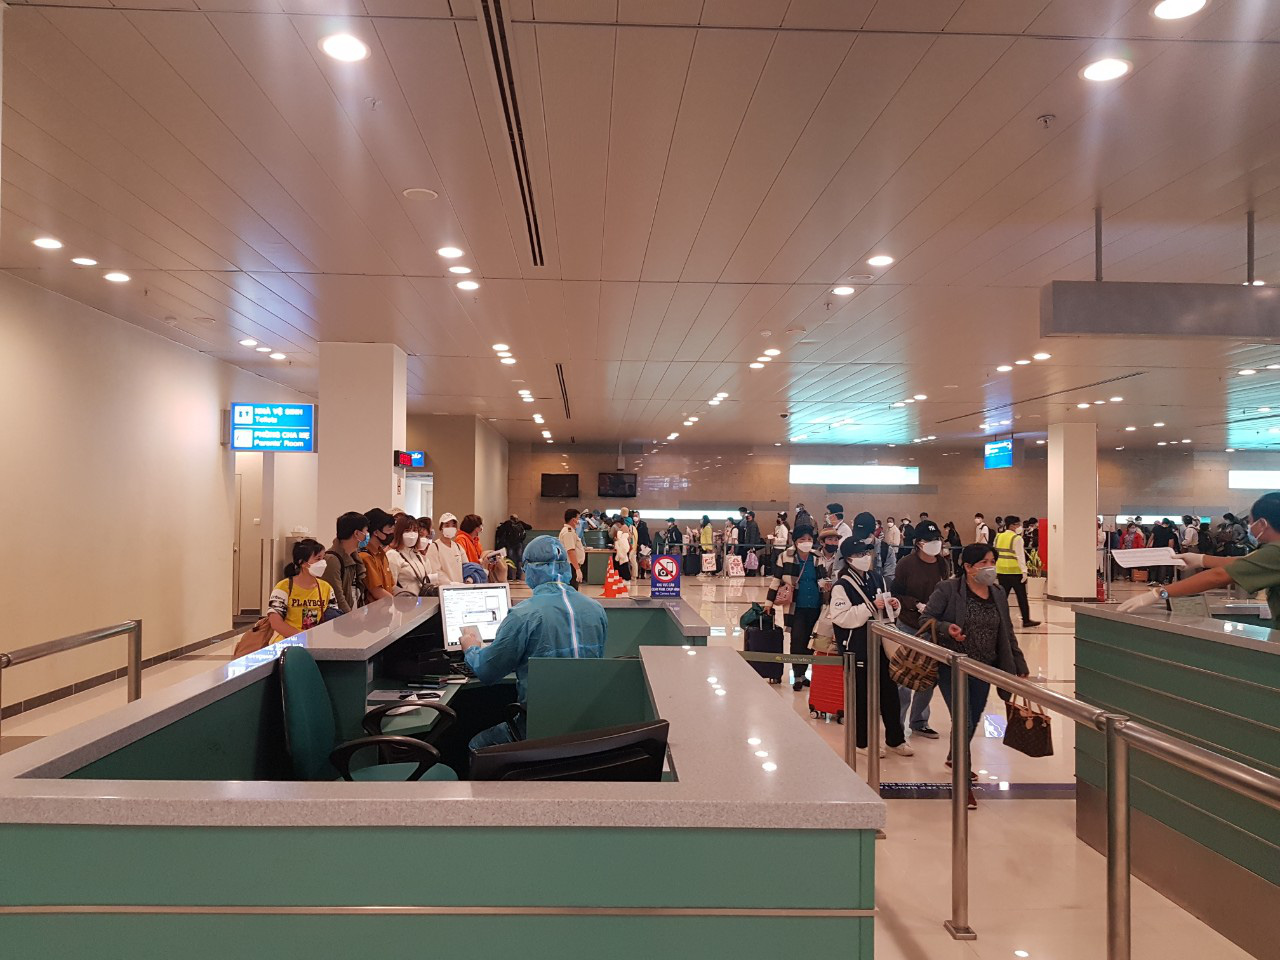 Cận cảnh 3 chuyến bay chở hơn 600 hành khách từ Hàn Quốc hạ cánh sân bay Cần Thơ - Ảnh 6.